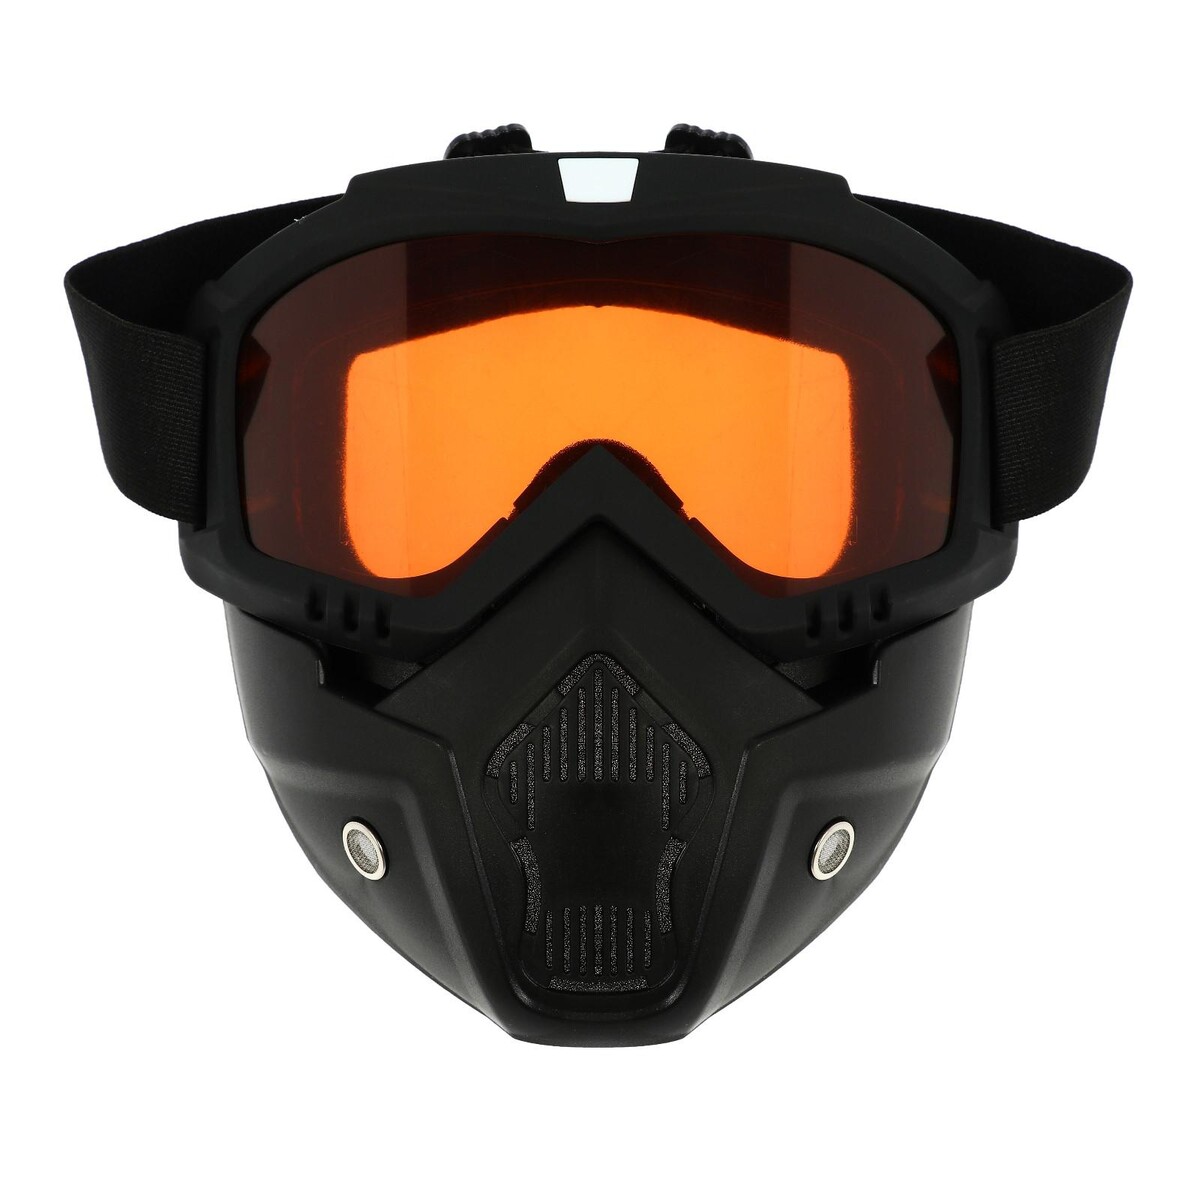 Очки-маска для езды на мототехнике, разборные, стекло оранжевый хром, цвет черный очки маска для езды на мототехнике разборные визор прозрачный